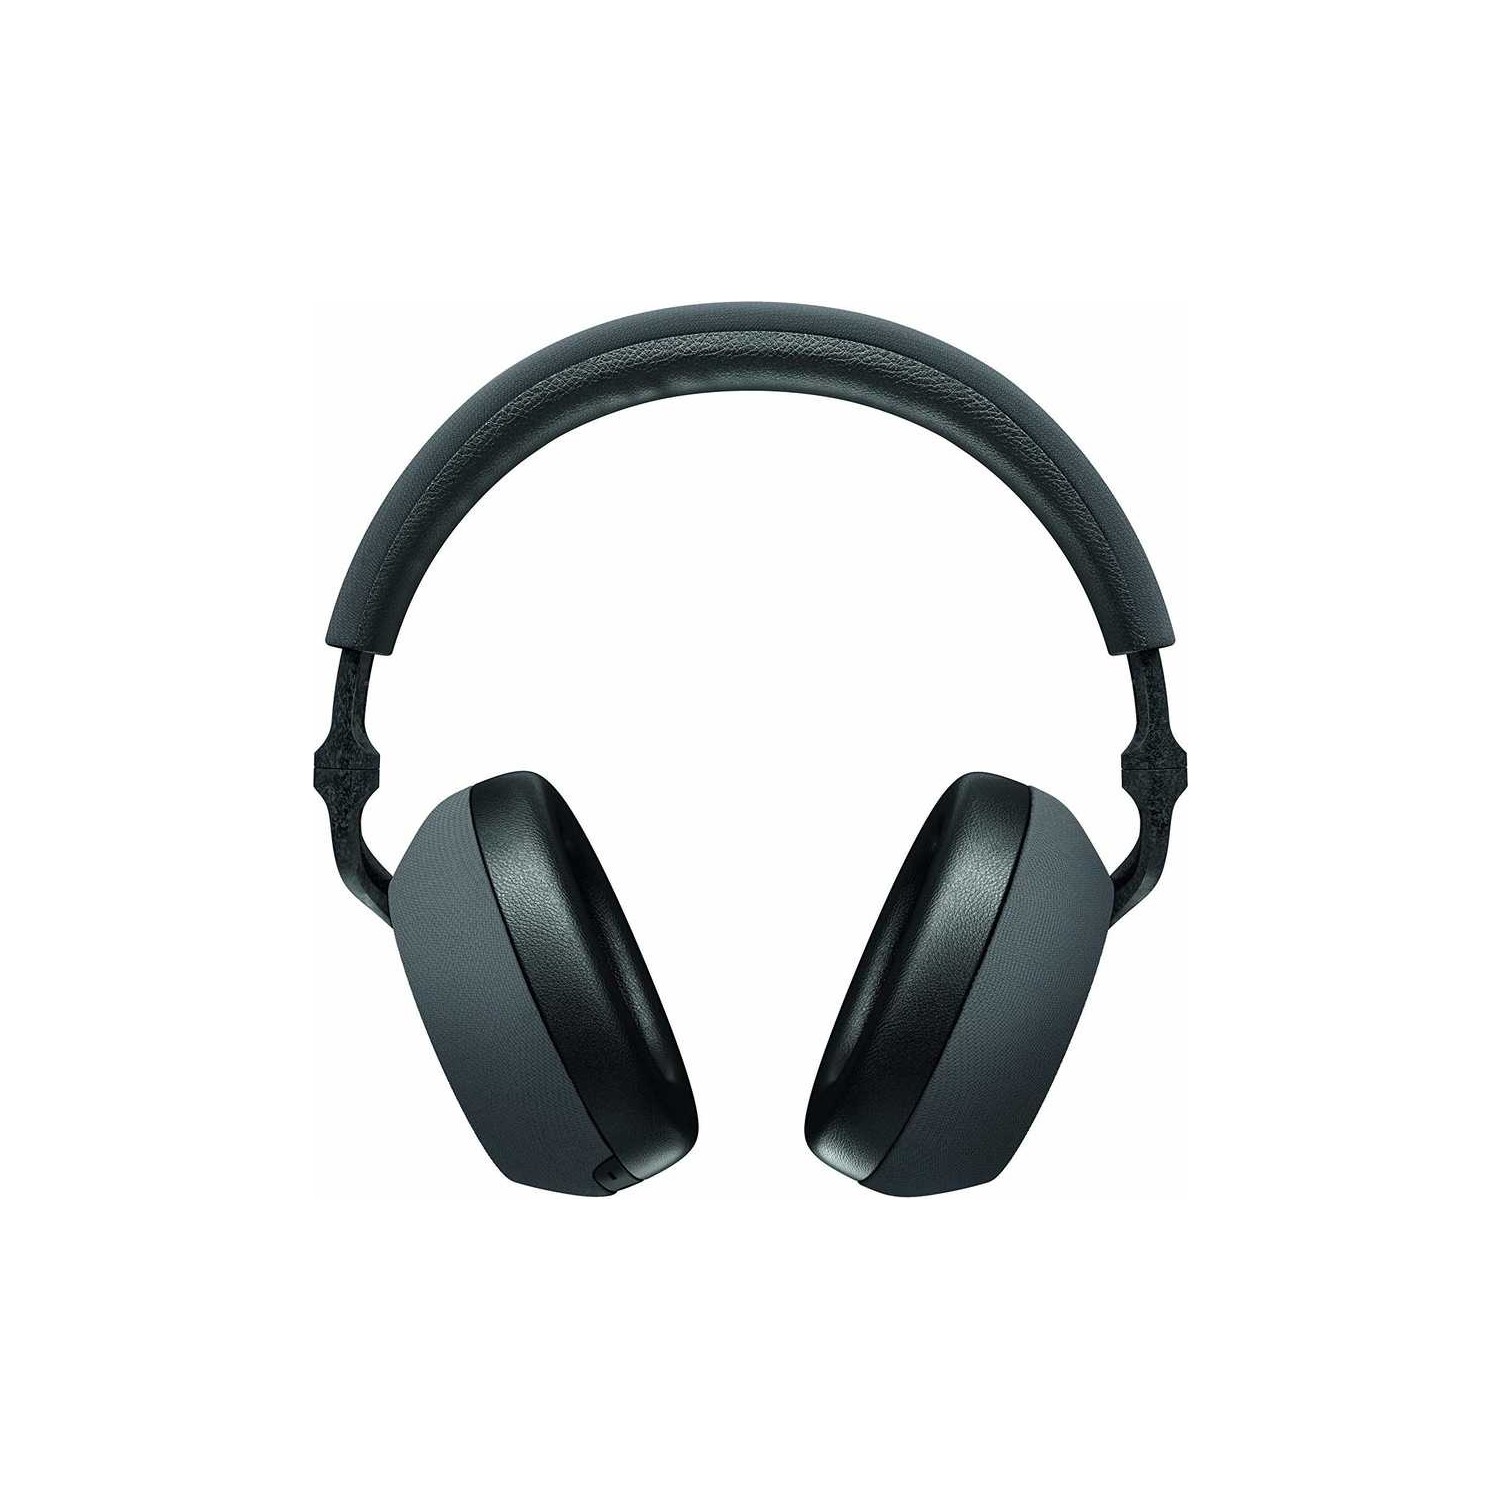 2500 TL Üzeri Kulaküstü Bluetooth Kulaklık Önerileri